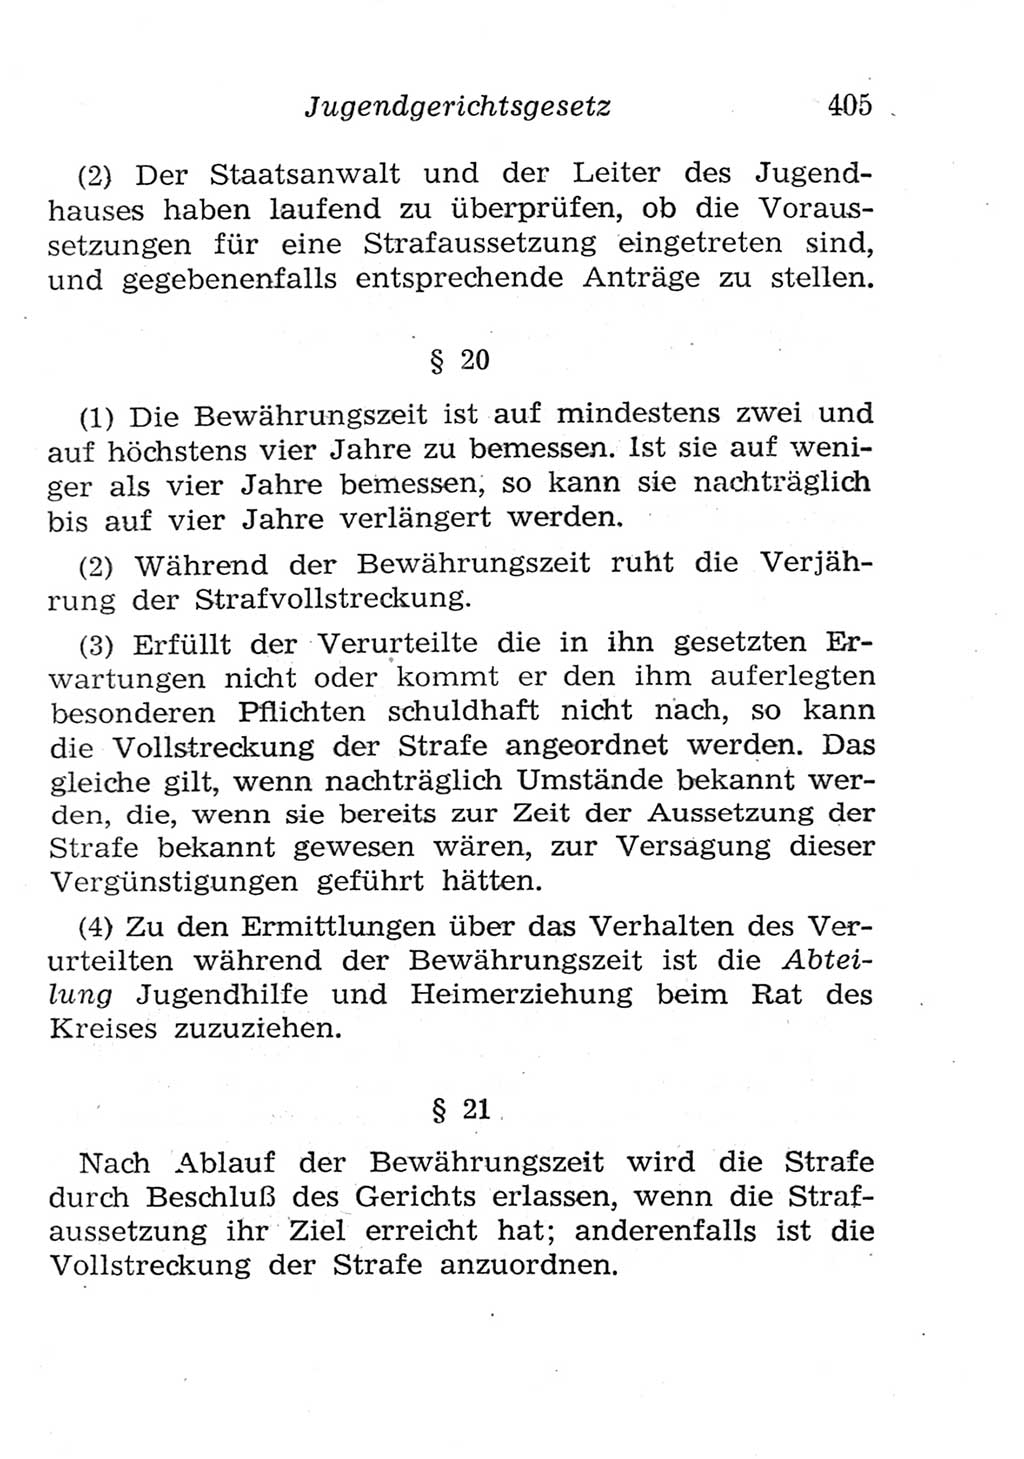 Strafgesetzbuch (StGB) und andere Strafgesetze [Deutsche Demokratische Republik (DDR)] 1957, Seite 405 (StGB Strafges. DDR 1957, S. 405)